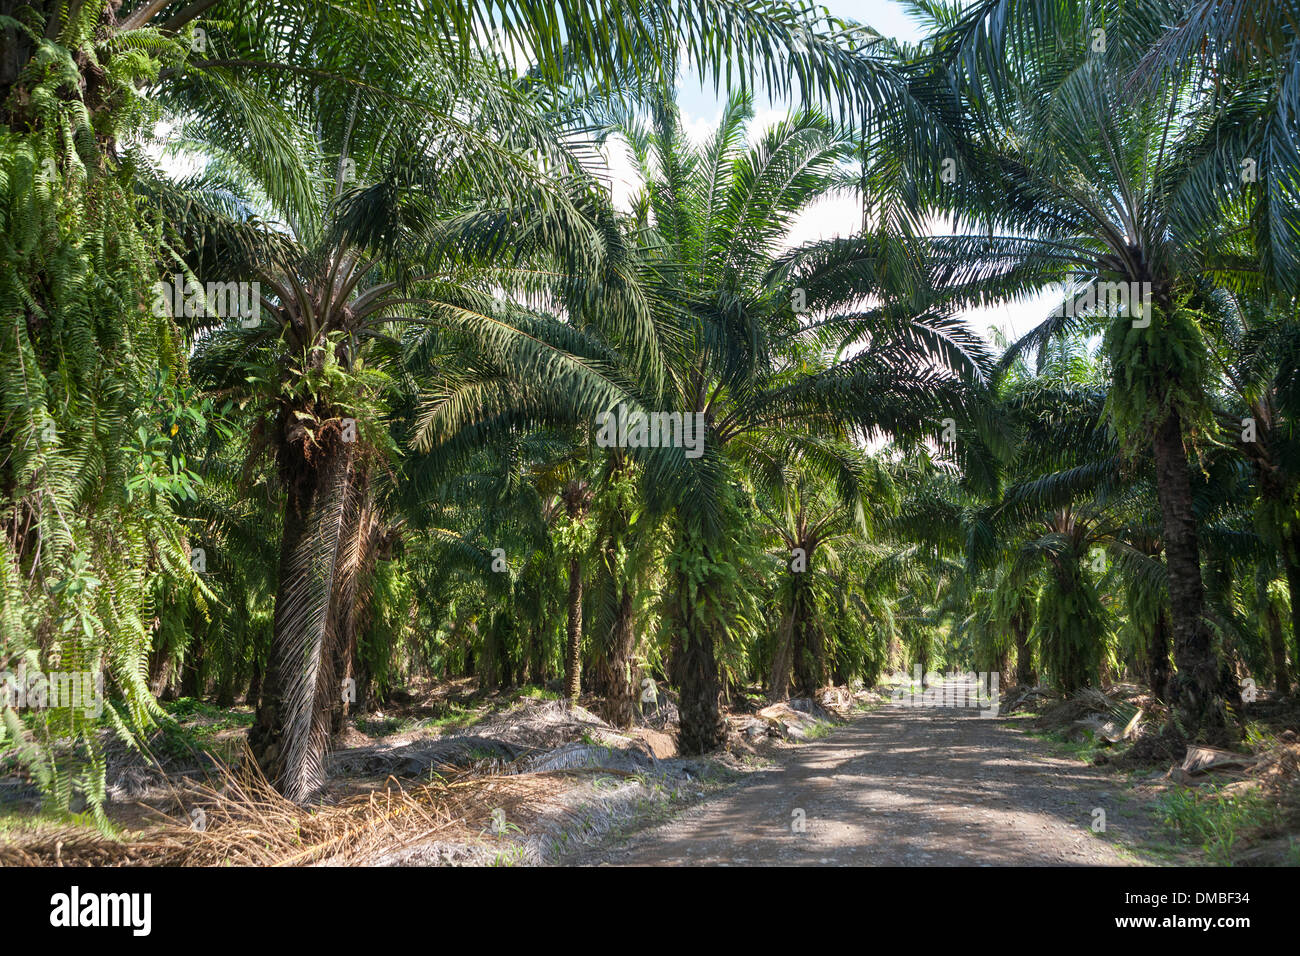 Afrikanischen Palmenplantagen in Costa Rica. Ursprünglich aus Westafrika, Elaeis Guineensis in den 1940er Jahren von United Fruit Co. gepflanzt wurde Stockfoto